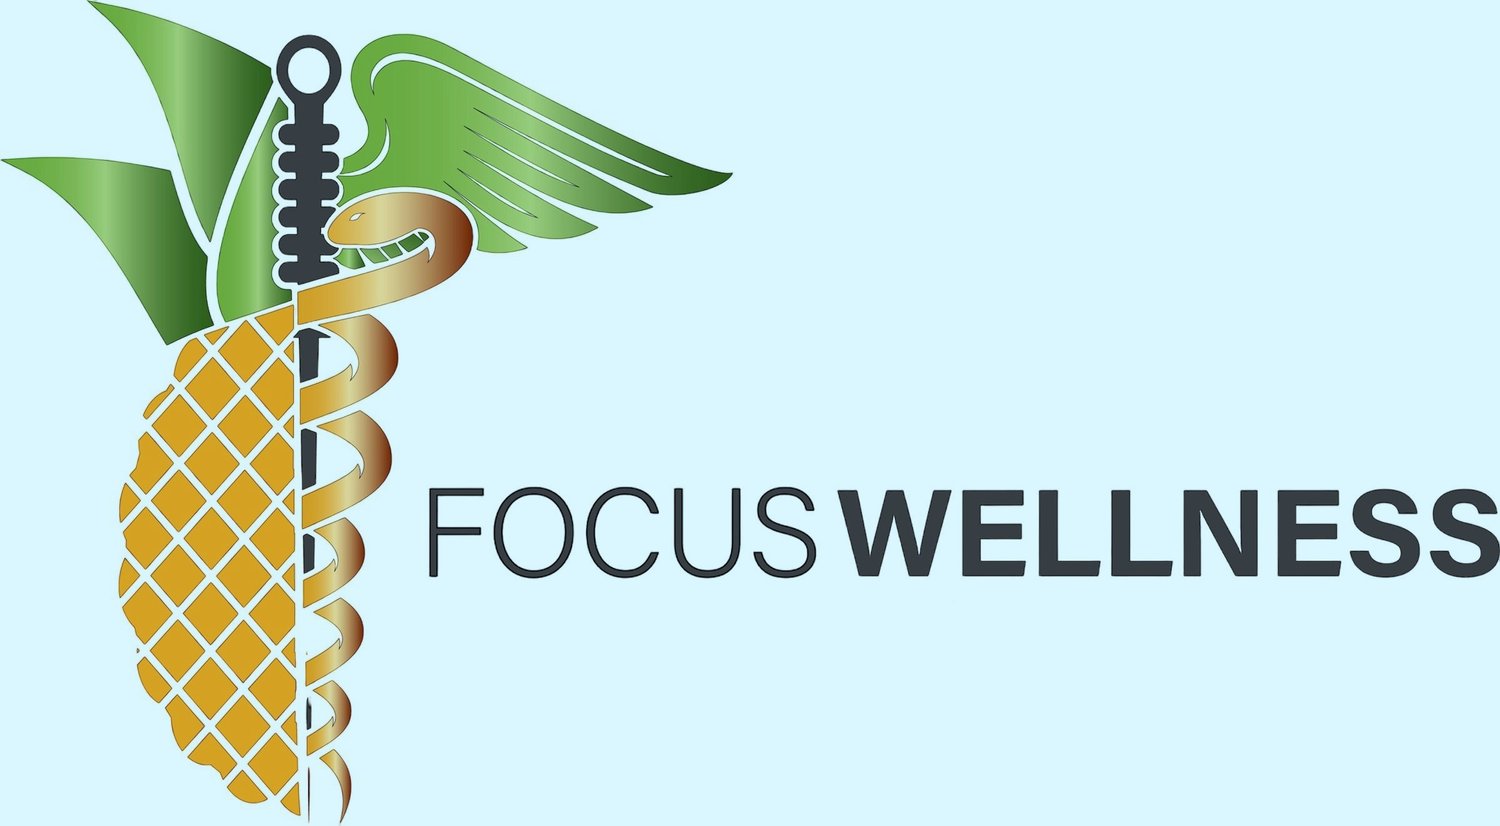 Focus Wellness